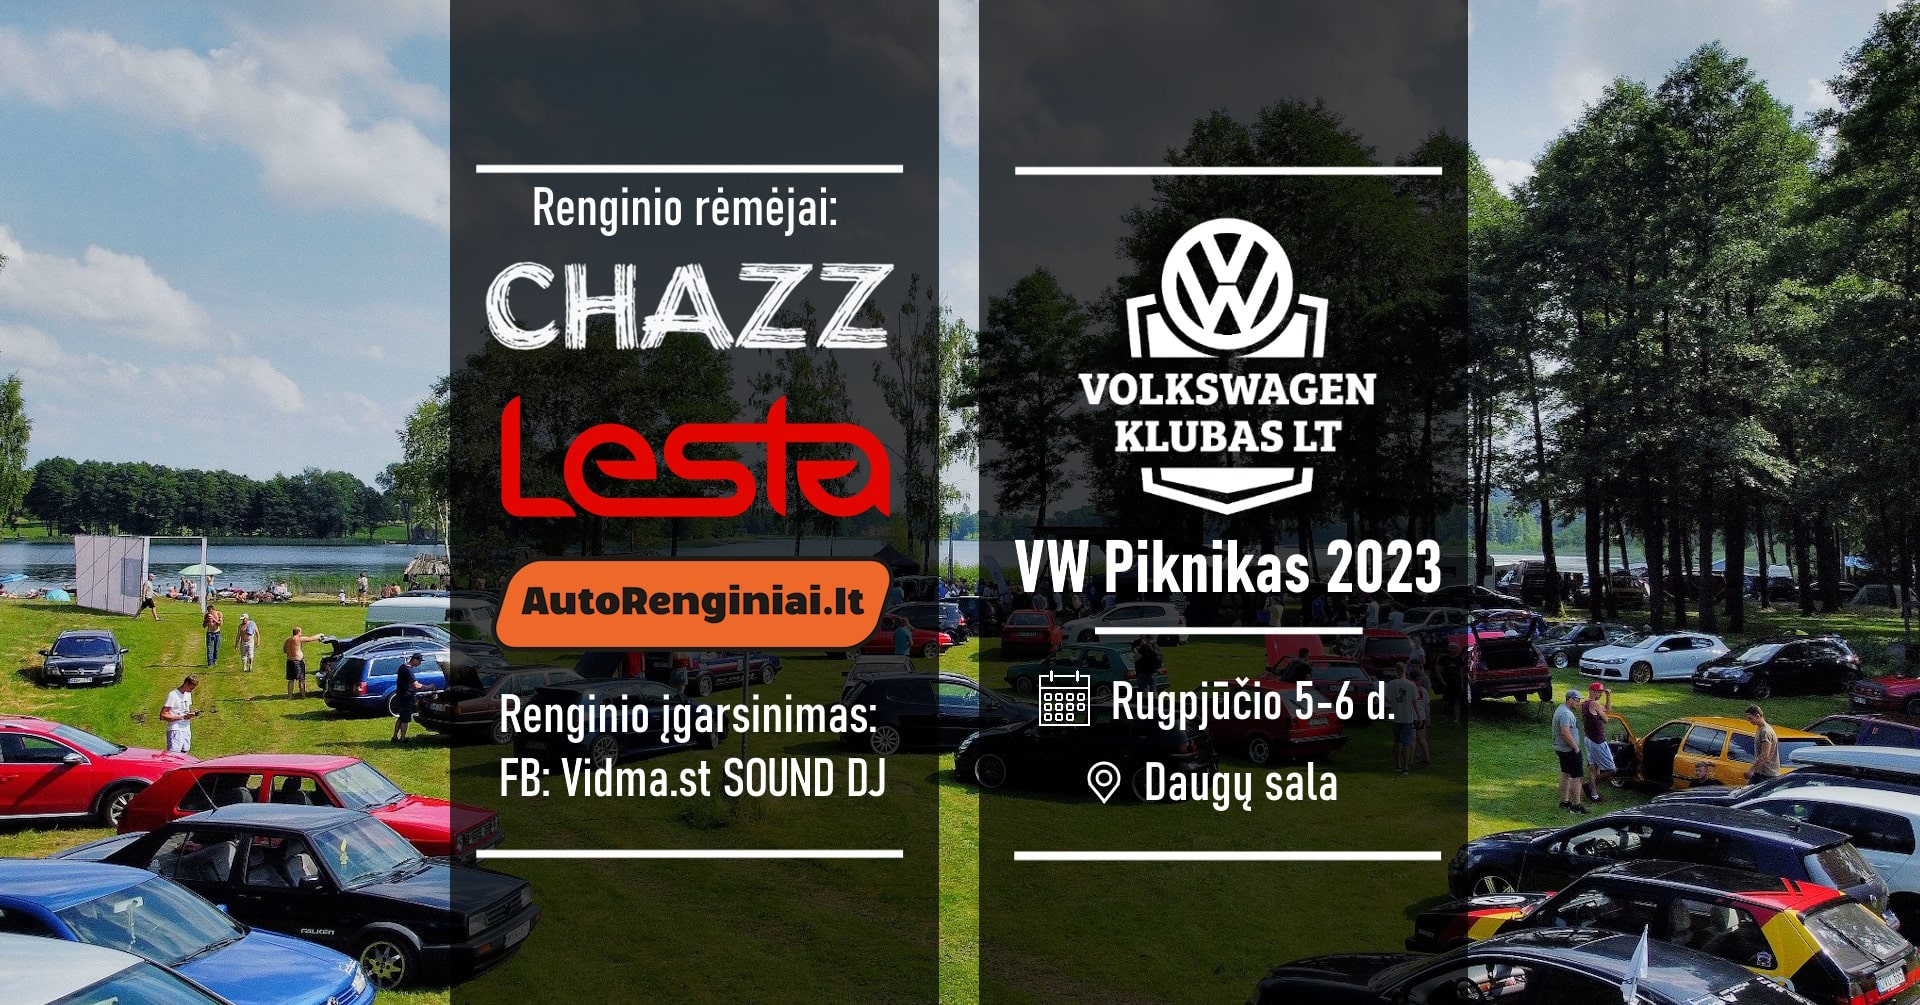 VW Piknikas 2023. Vol.6